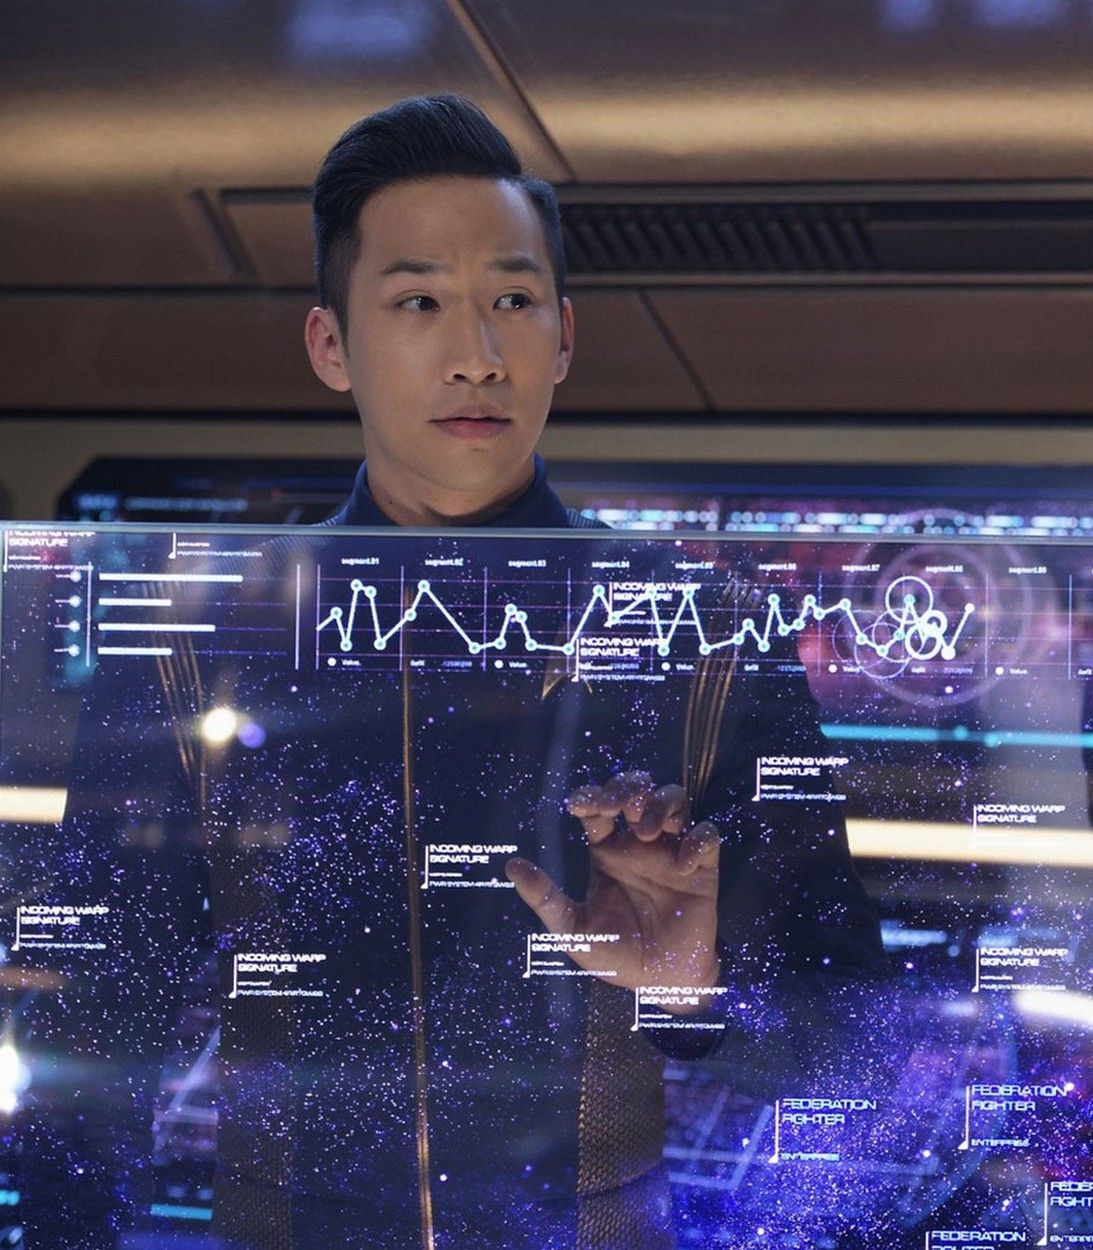 Patrick Kwok-Choon as Lt. Gen Rhys in Star Trek Discovery vertical